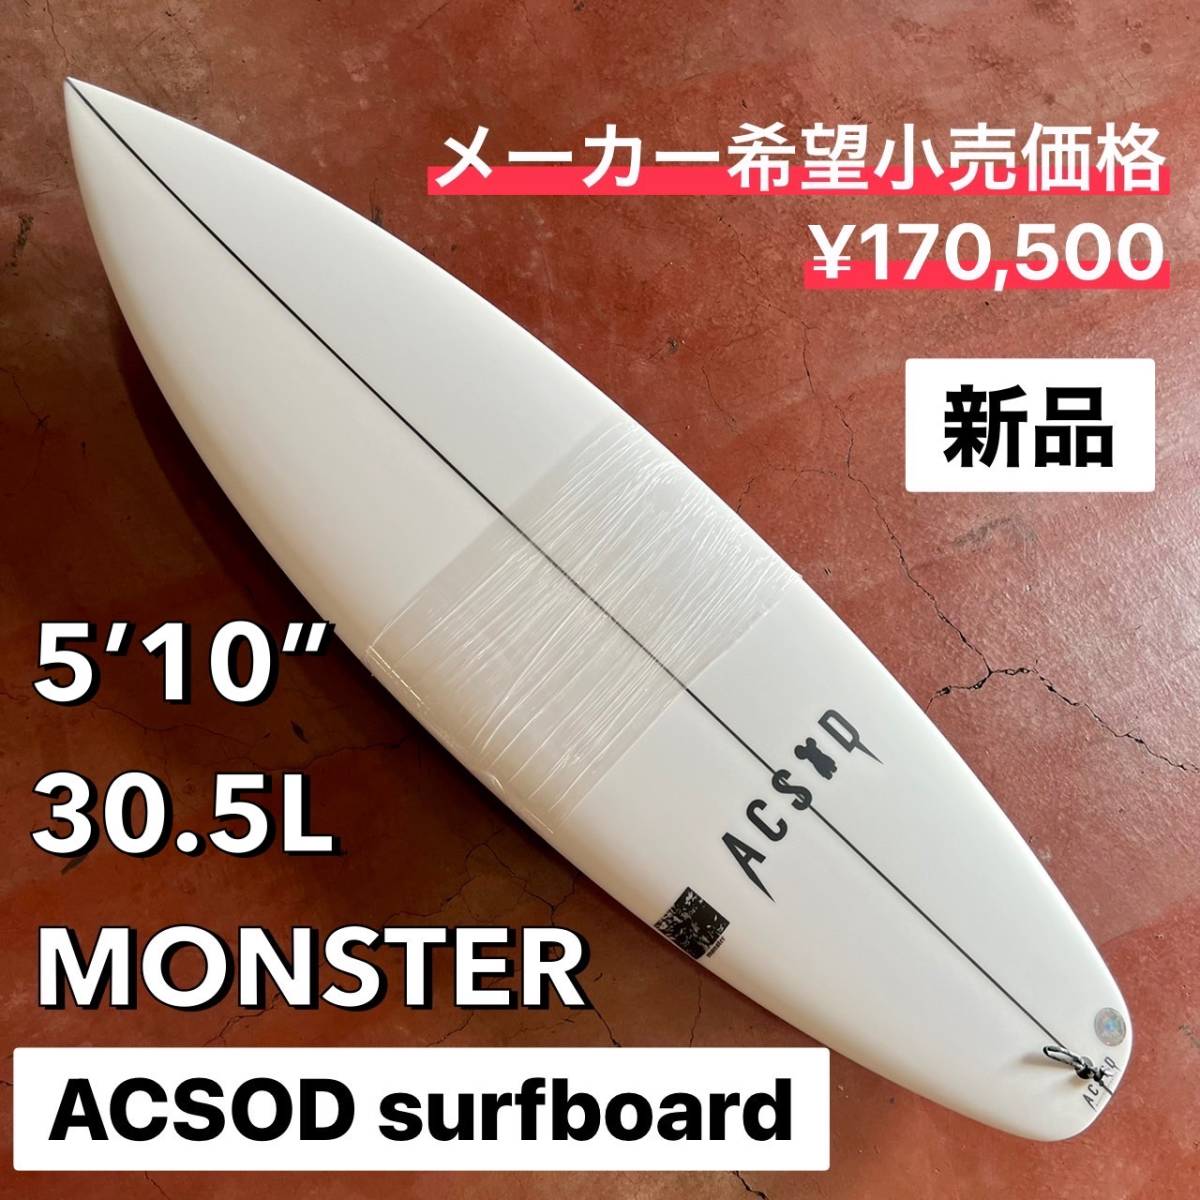 お年玉セール特価】 【限定特価!!】ACSOD 5'10” MONSTER/アクソード